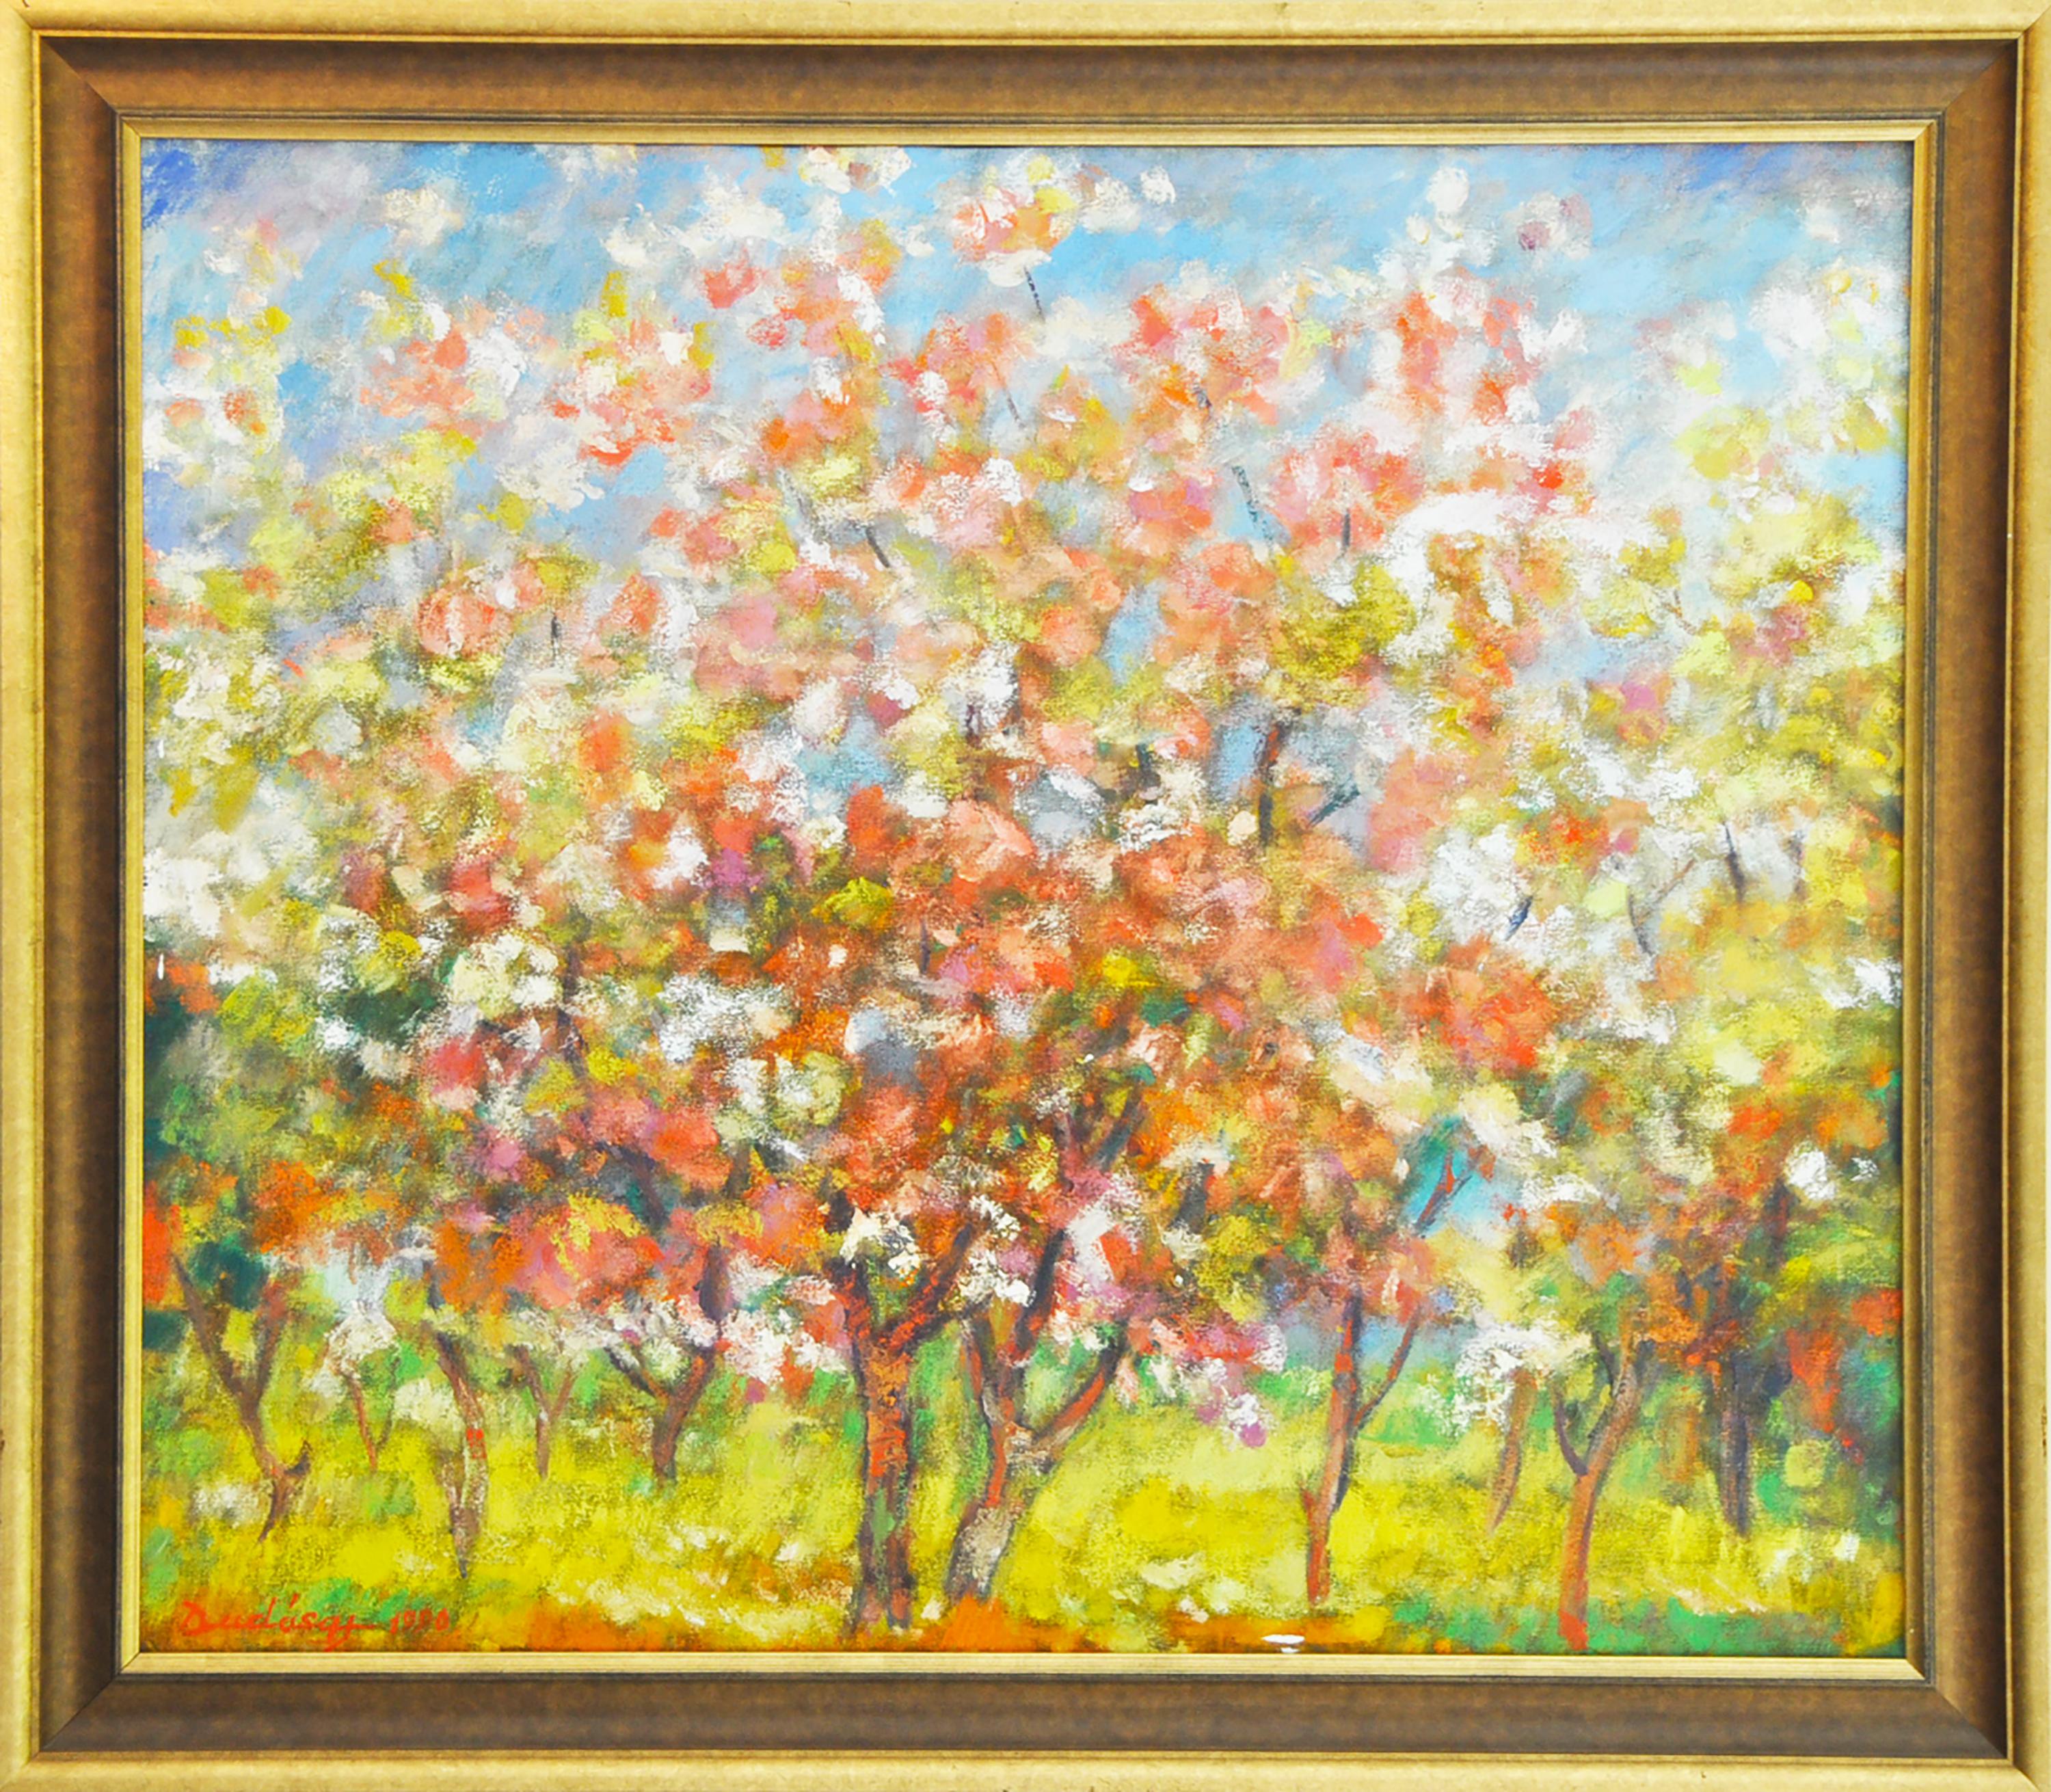 "Orchard in Bloom" du peintre roumain Gyula Dudas est une huile sur panneau post-impressionniste représentant un verger en fleurs quelque part dans la campagne transylvanienne, comme le suggère le titre.

Gyula Dudas était un peintre, céramiste et